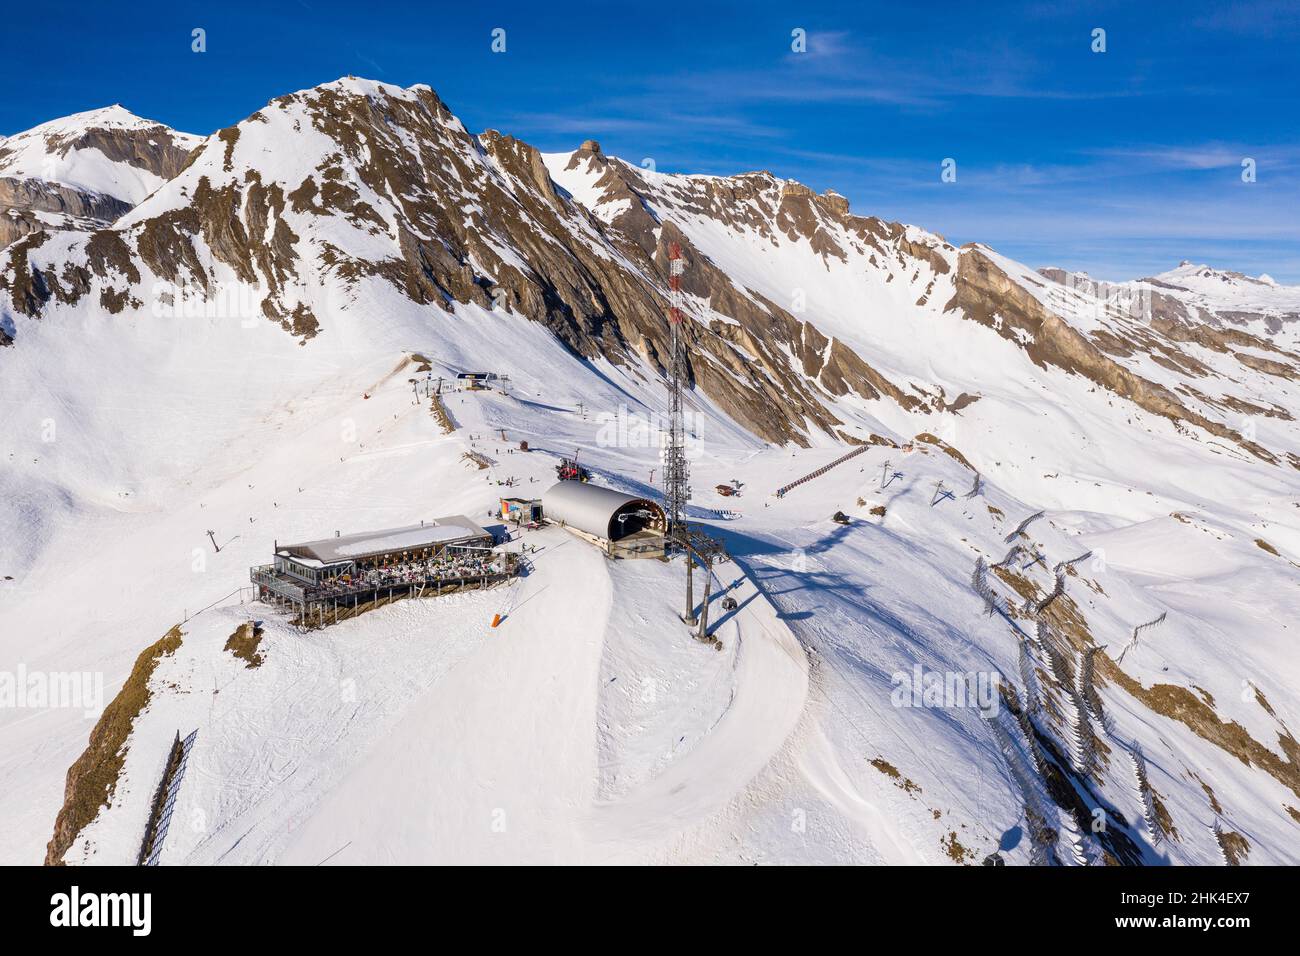 Luftaufnahme der Seilbahn-Station auf dem Gipfel des Skigebiets Anzere im Kanton Wallis in den alpen in der Schweiz an einem sonnigen Wintertag Stockfoto